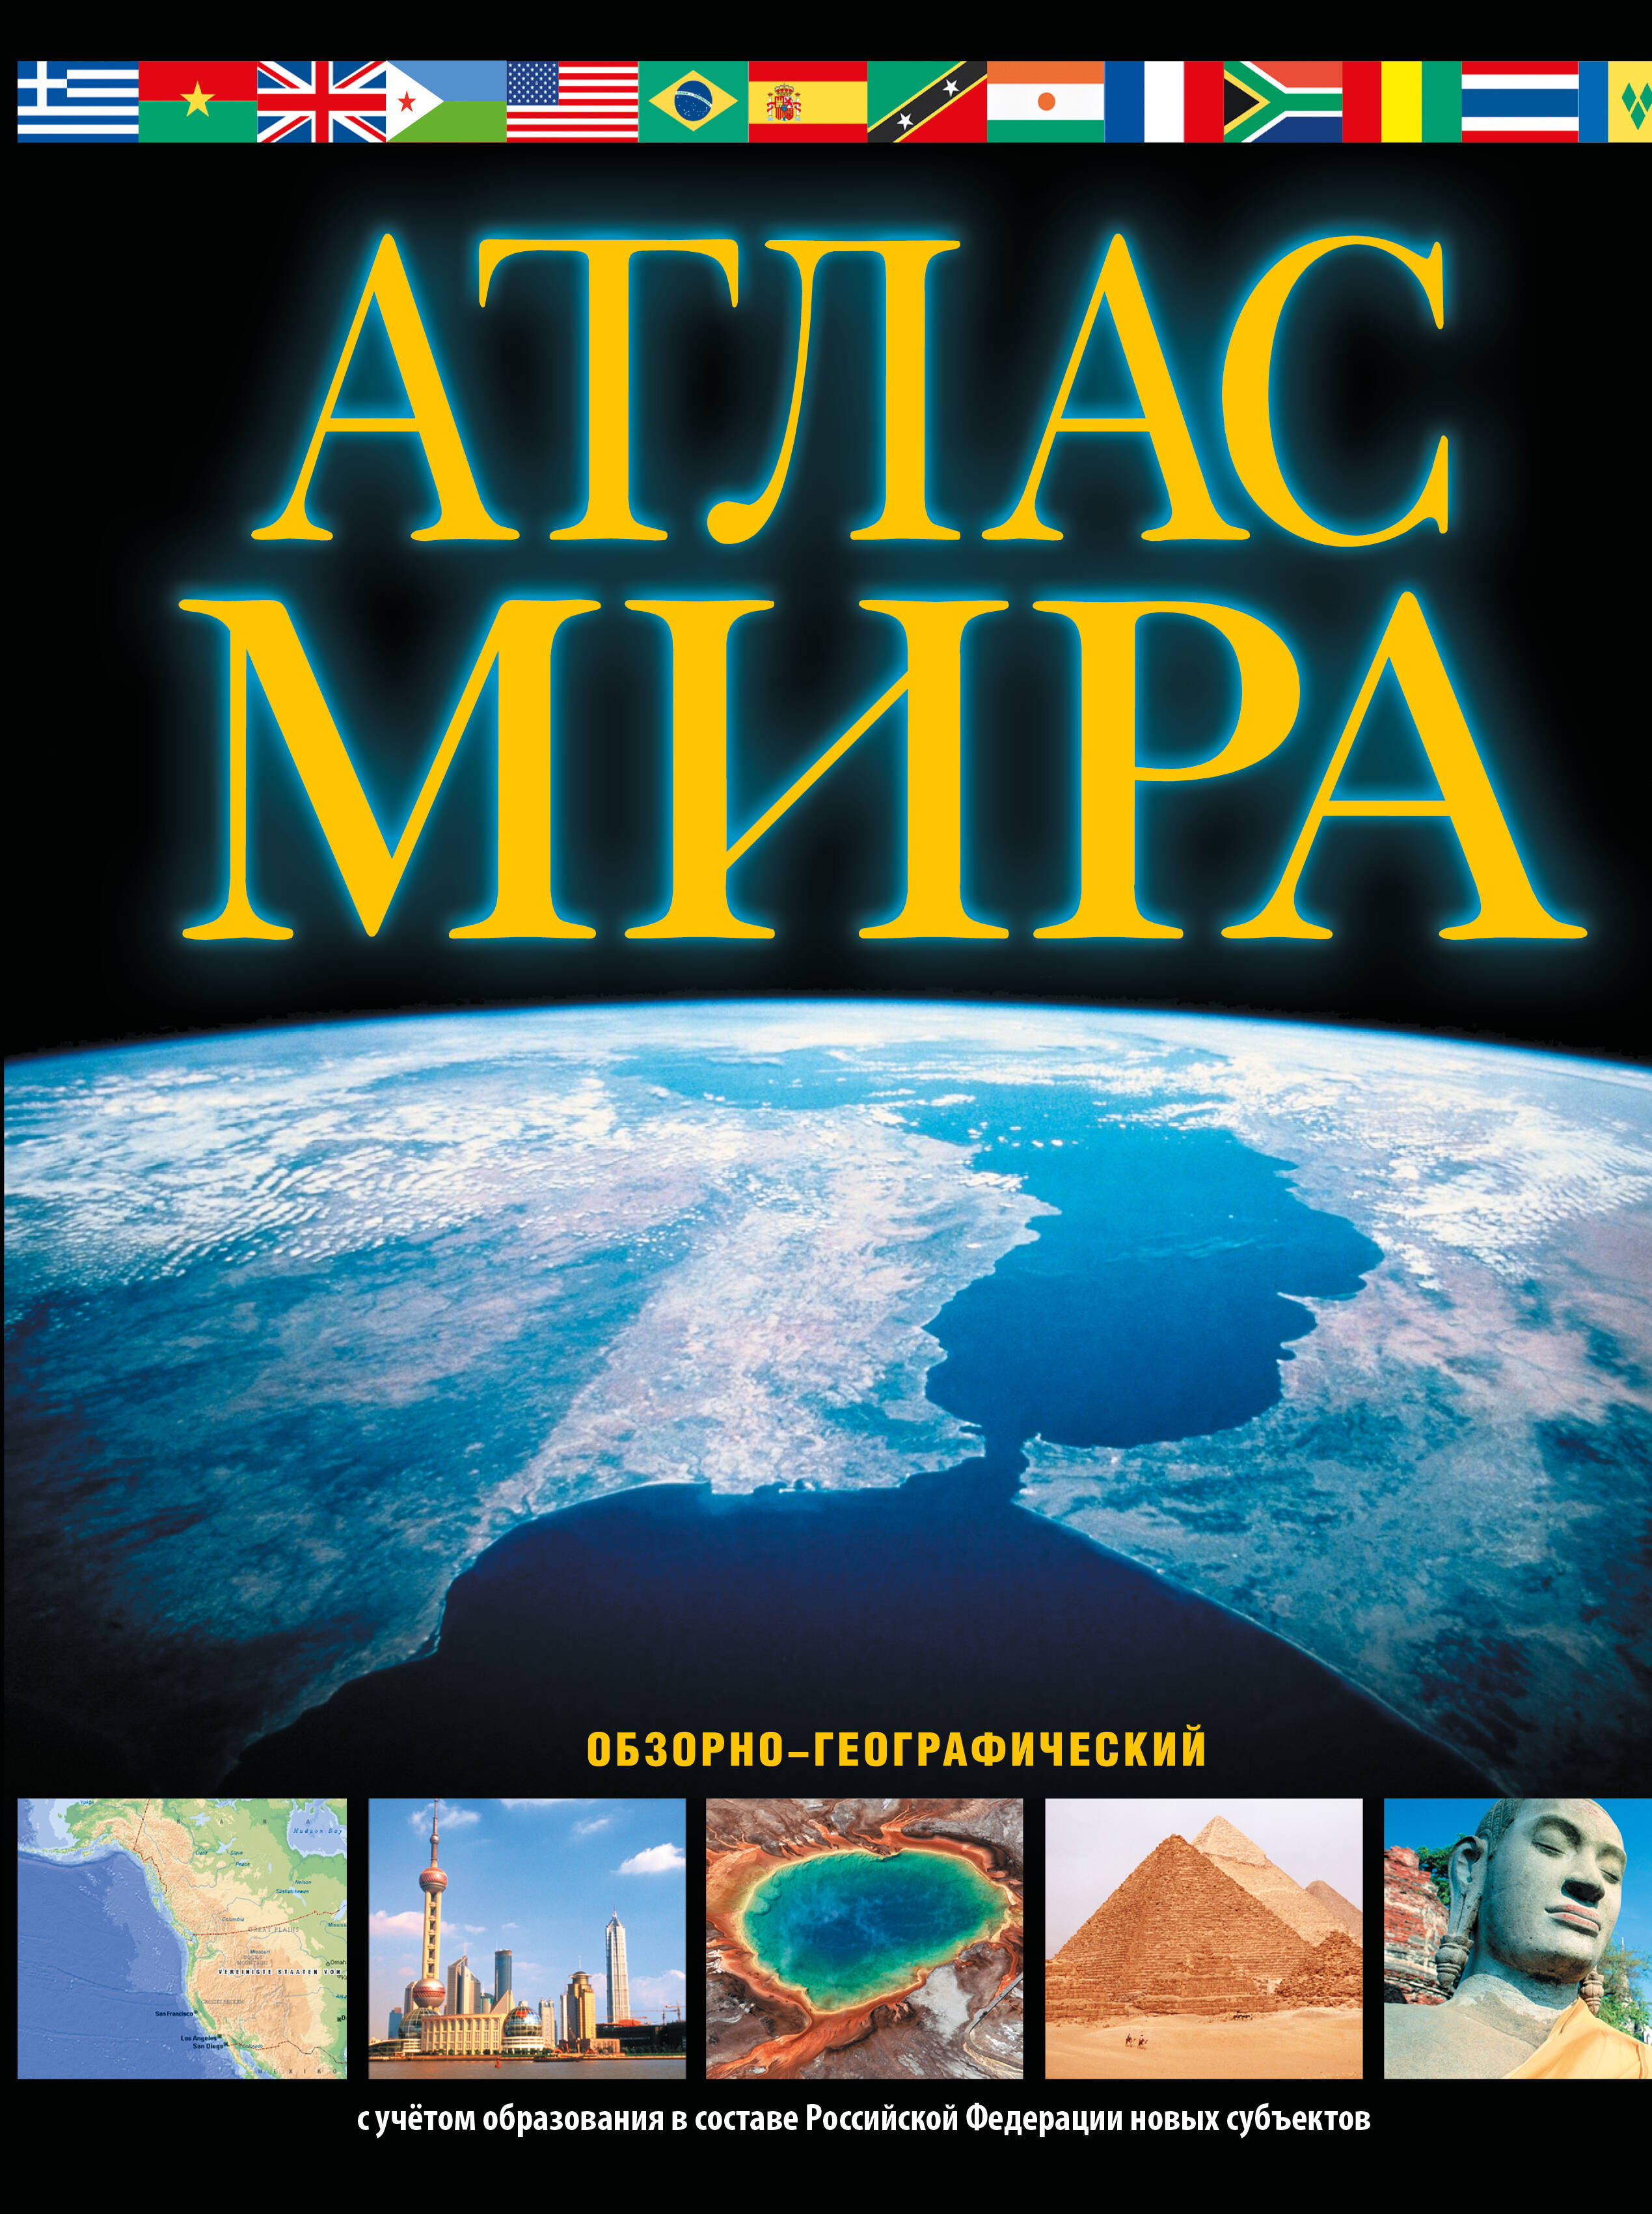 Атлас мира. Обзорно-географический кезлинг а ред обзорно географический атлас мира справочное издание